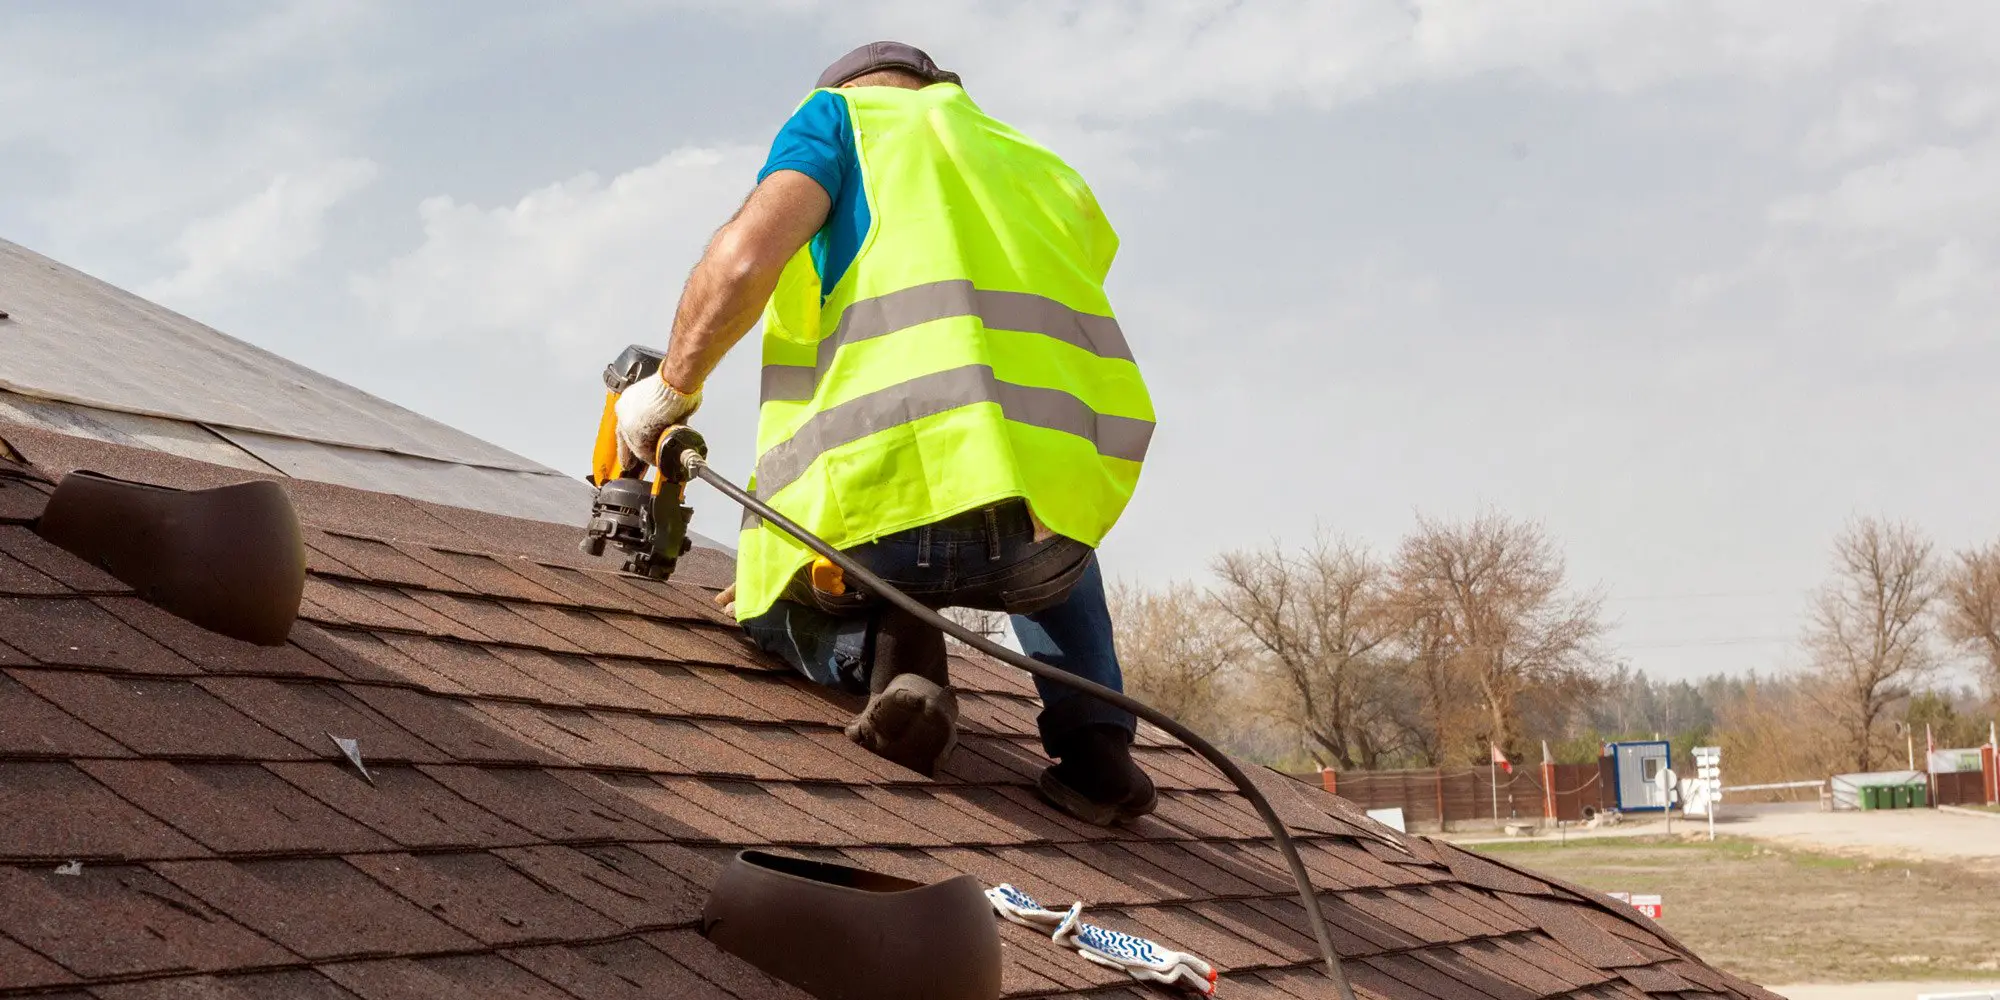 Roofing Contractors Jacksonville Fl (904) 478